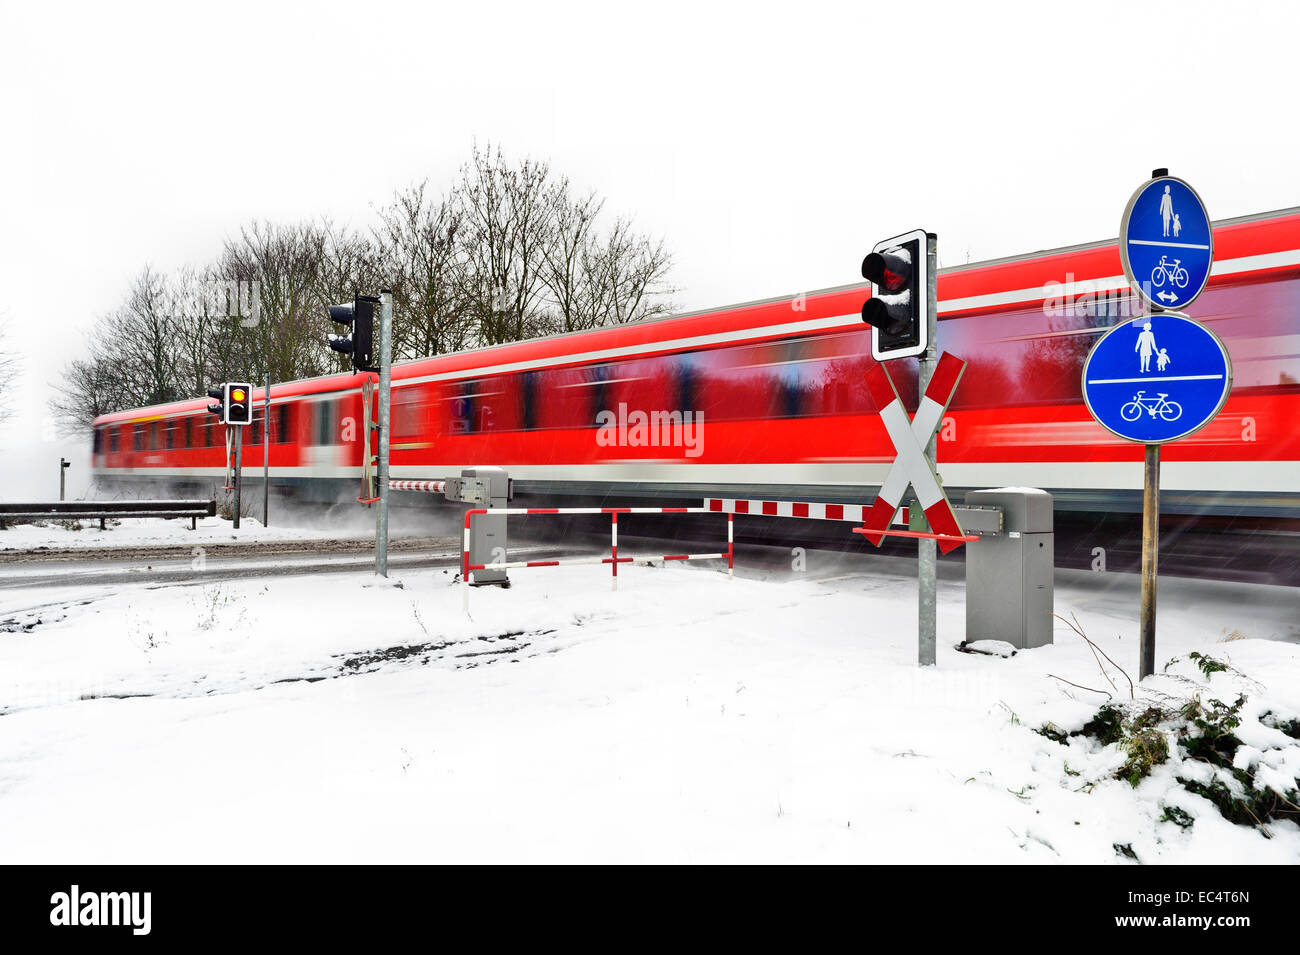 Le train de voyageurs rouge en hiver Banque D'Images